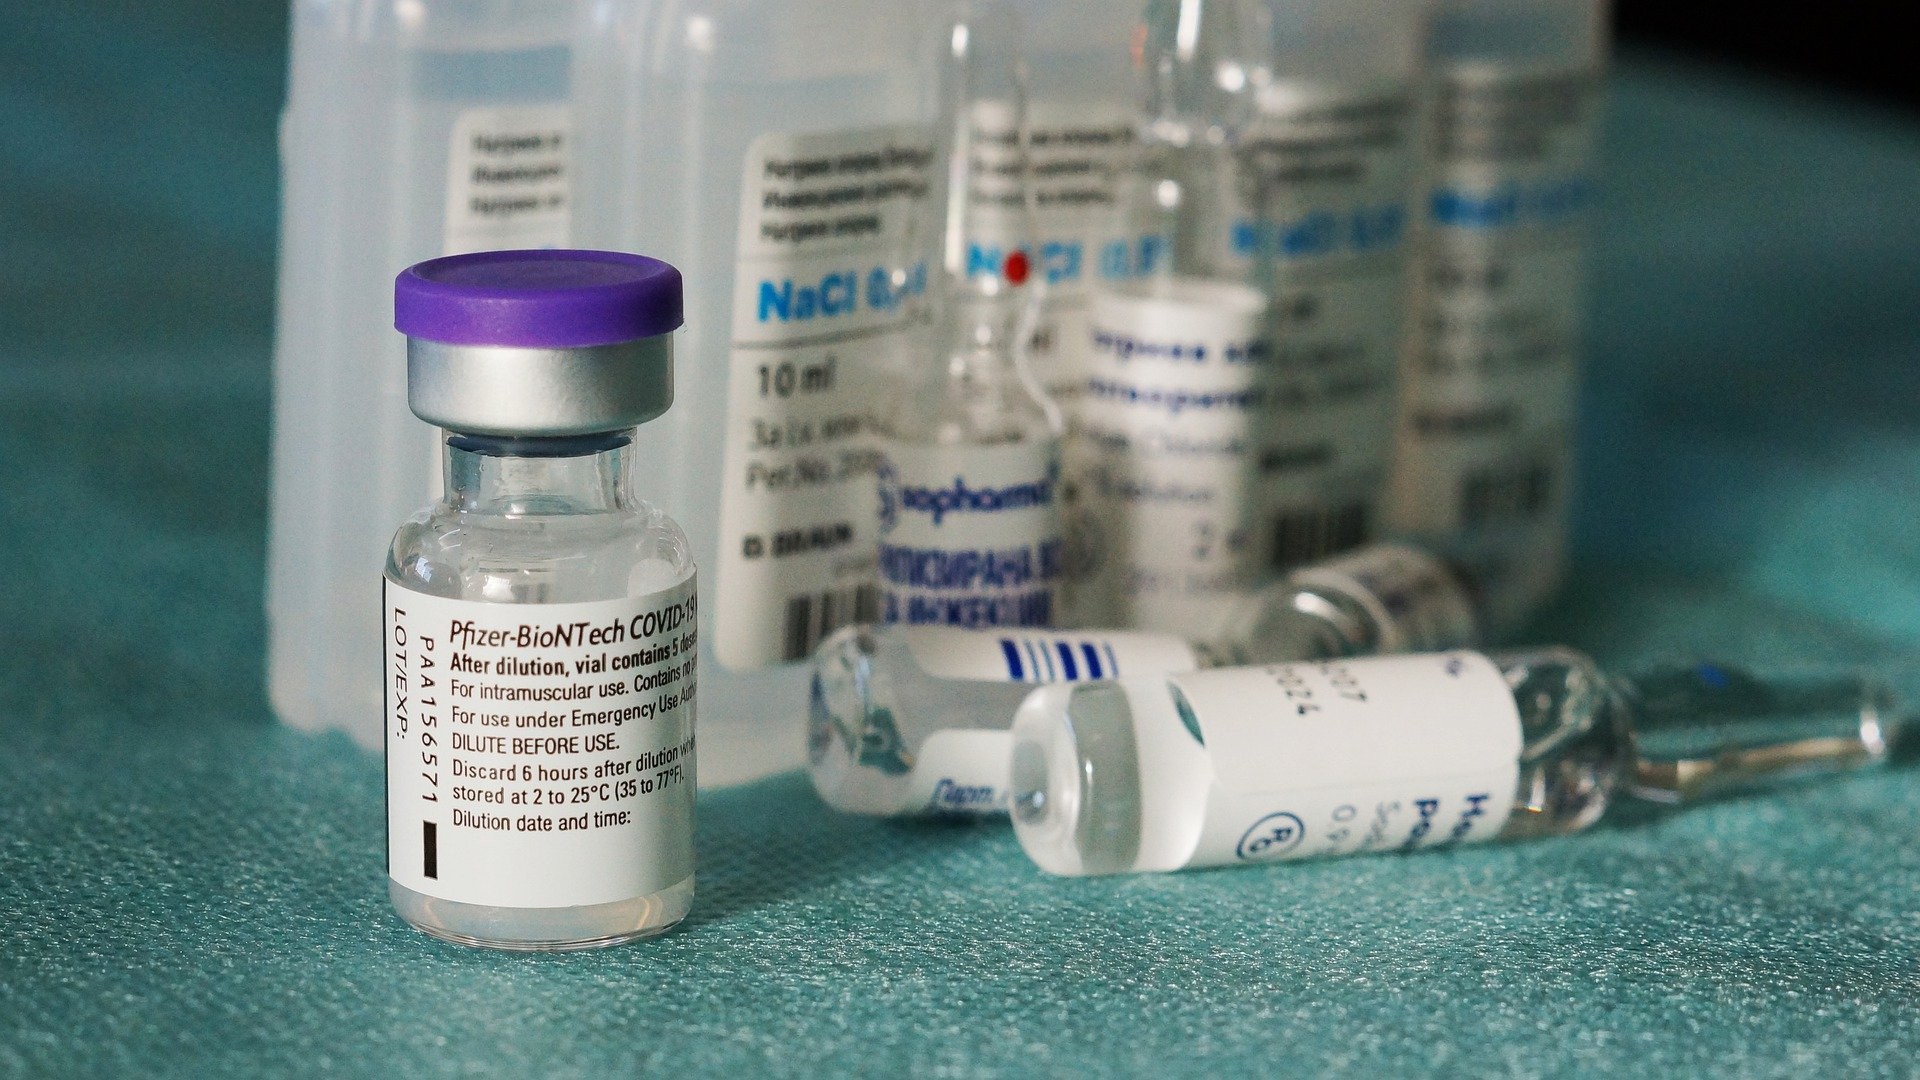 Em estudo com 1,2 milhão de pessoas, vacina da Pfizer/BioNTech reduziu casos sintomáticos de Covid-19 em 94% em todas as faixas etárias, após uma semana da primeira dose  (Foto: Pixabay)